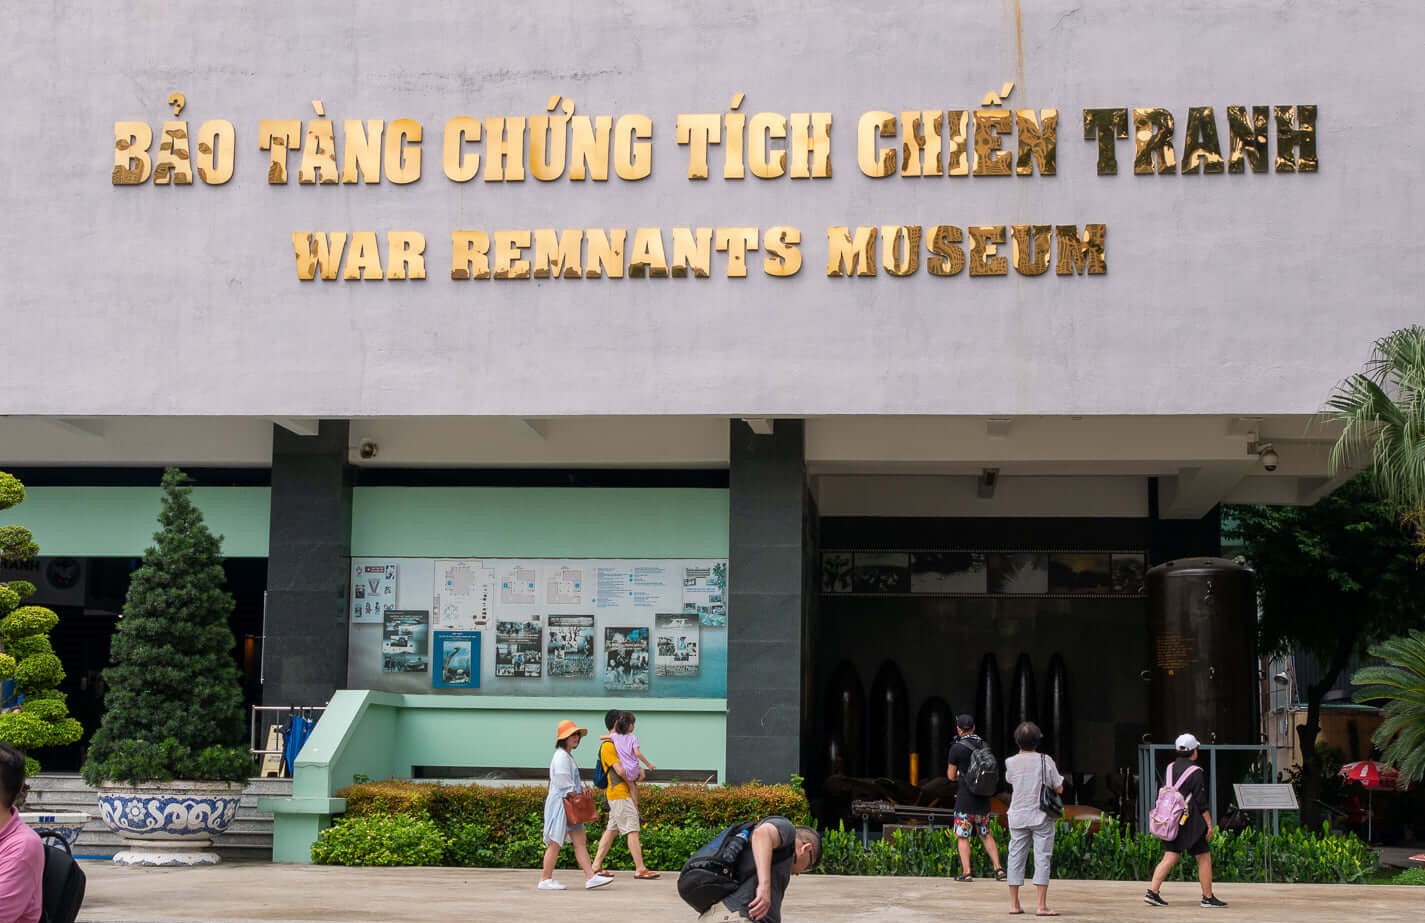 Muzeum Vietnamské války, War Remnants Museum Saigon